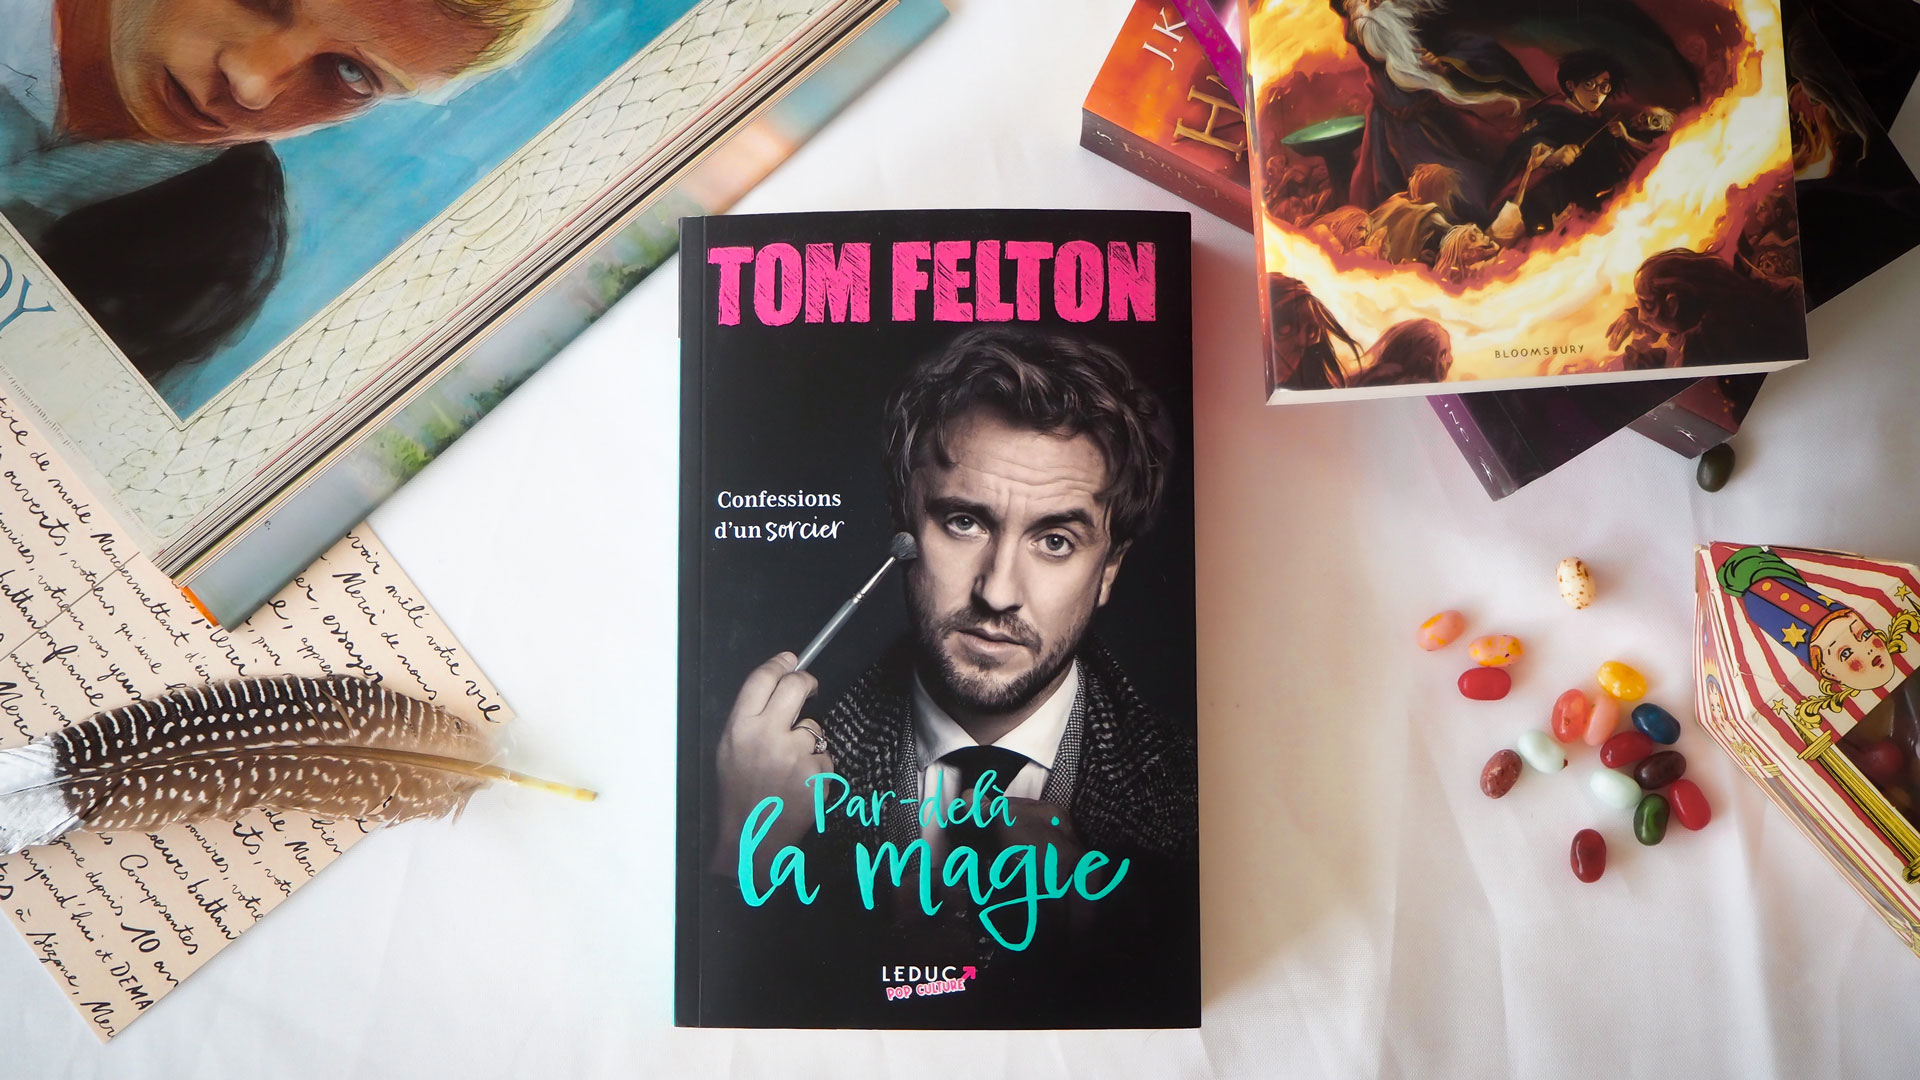 Par-delà la magie - Confessions d'un sorcier Tom Felton